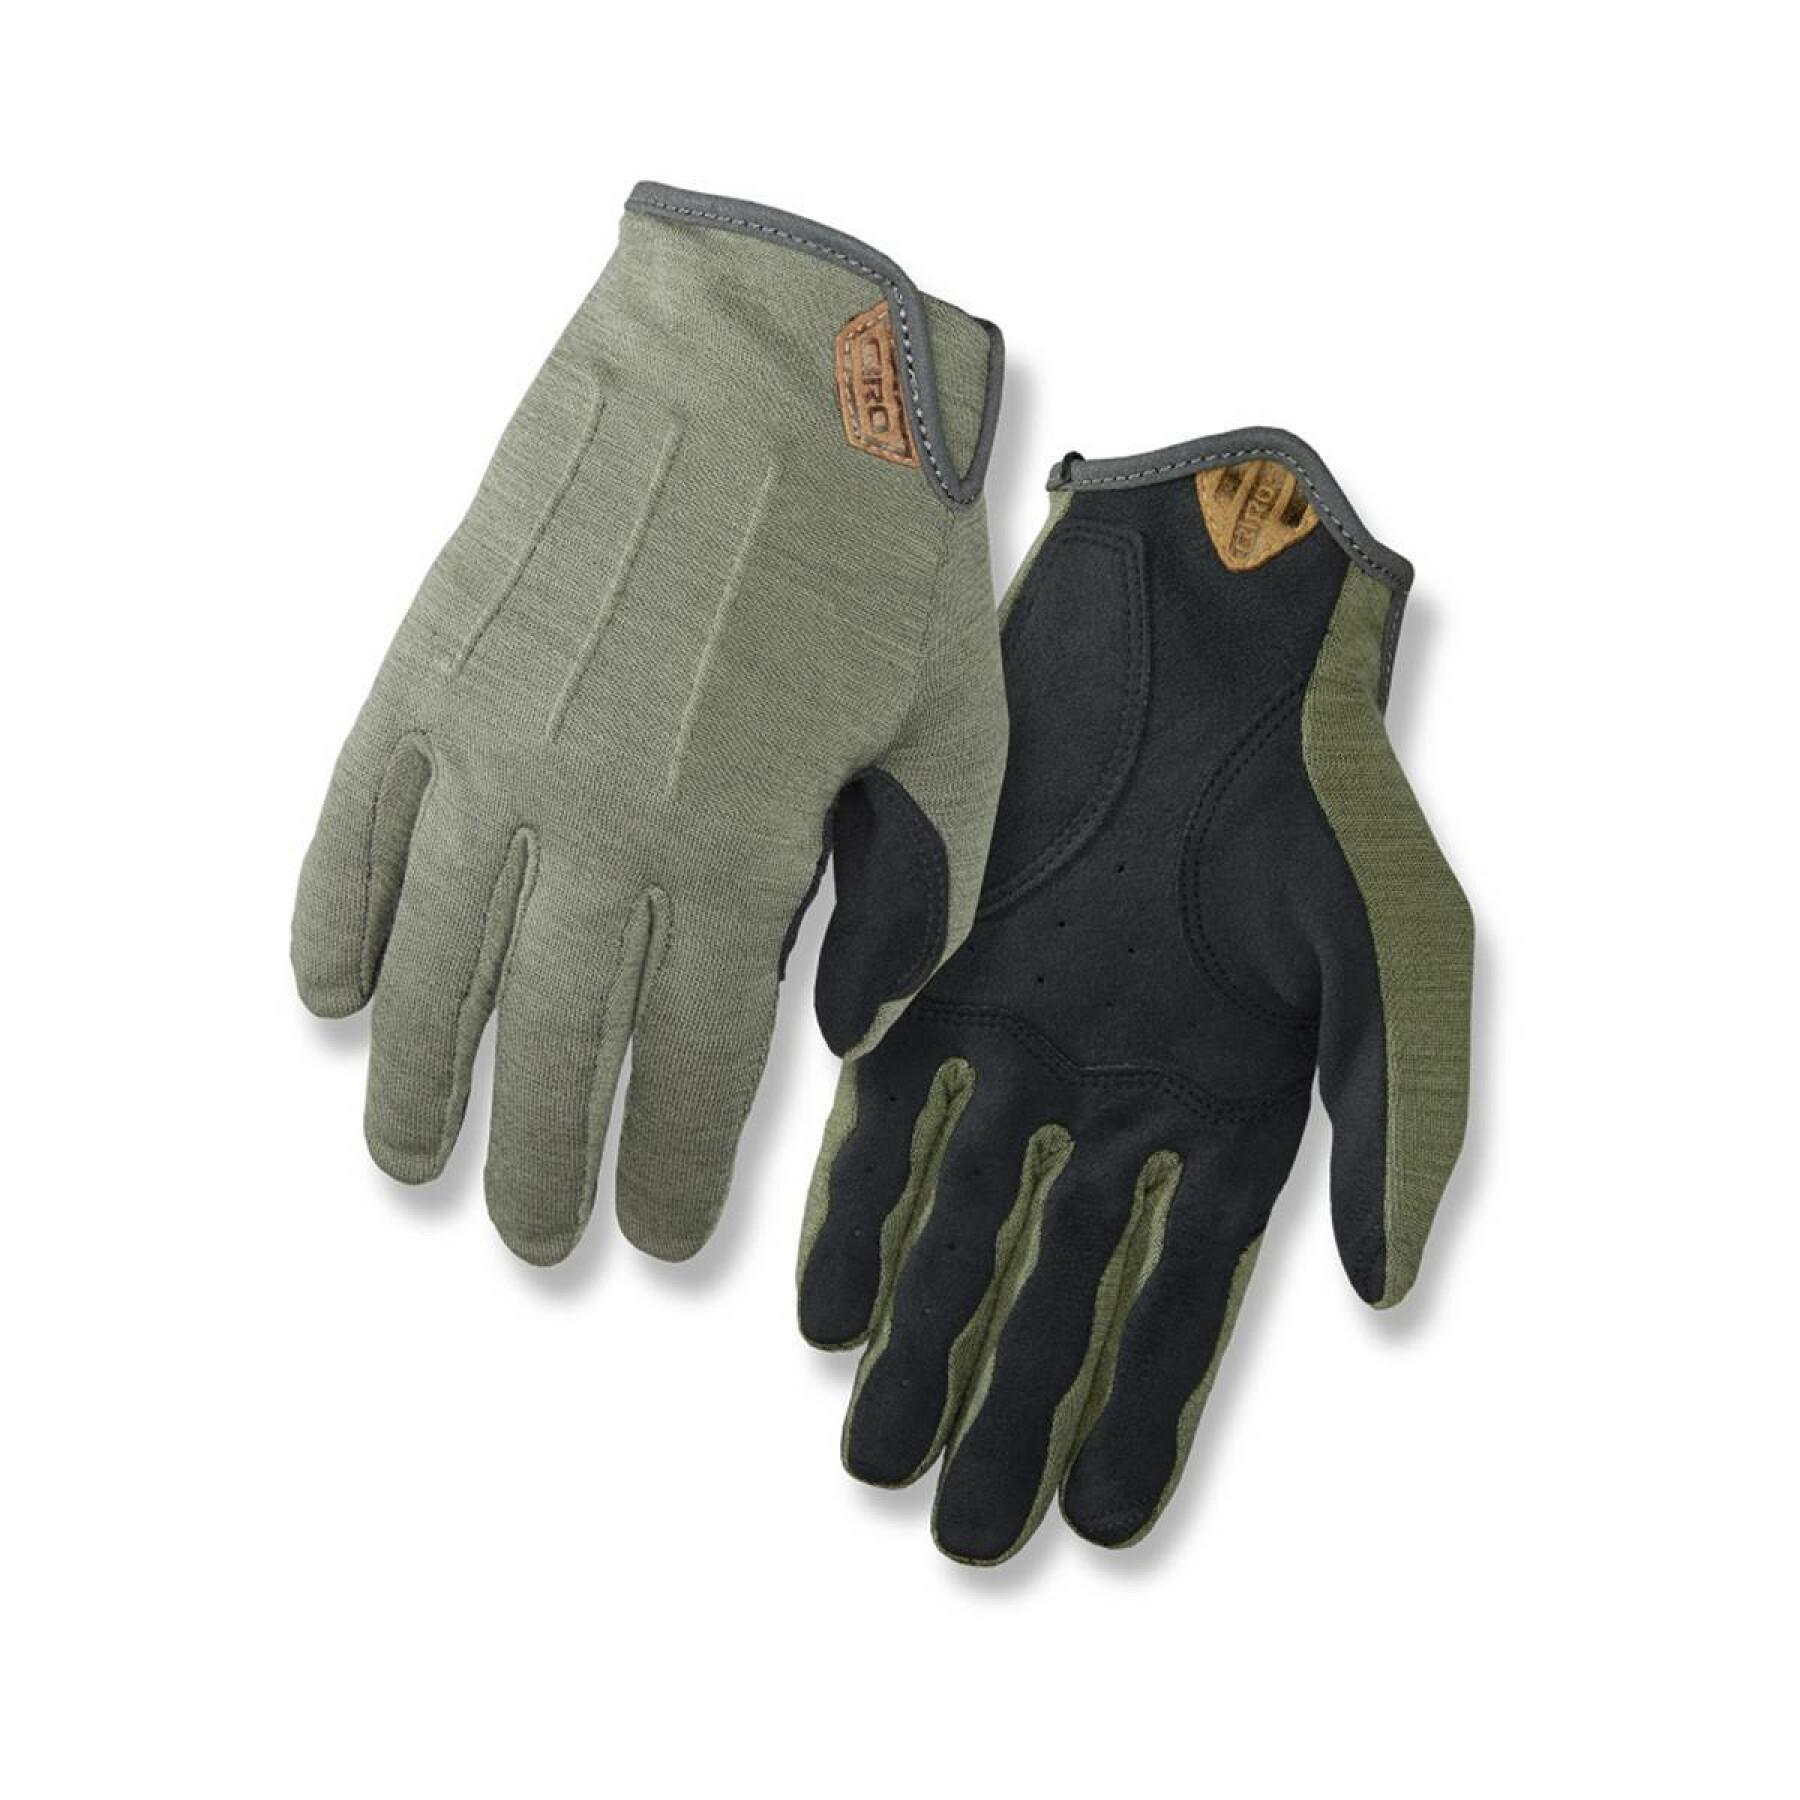 Long gloves Giro D Wool